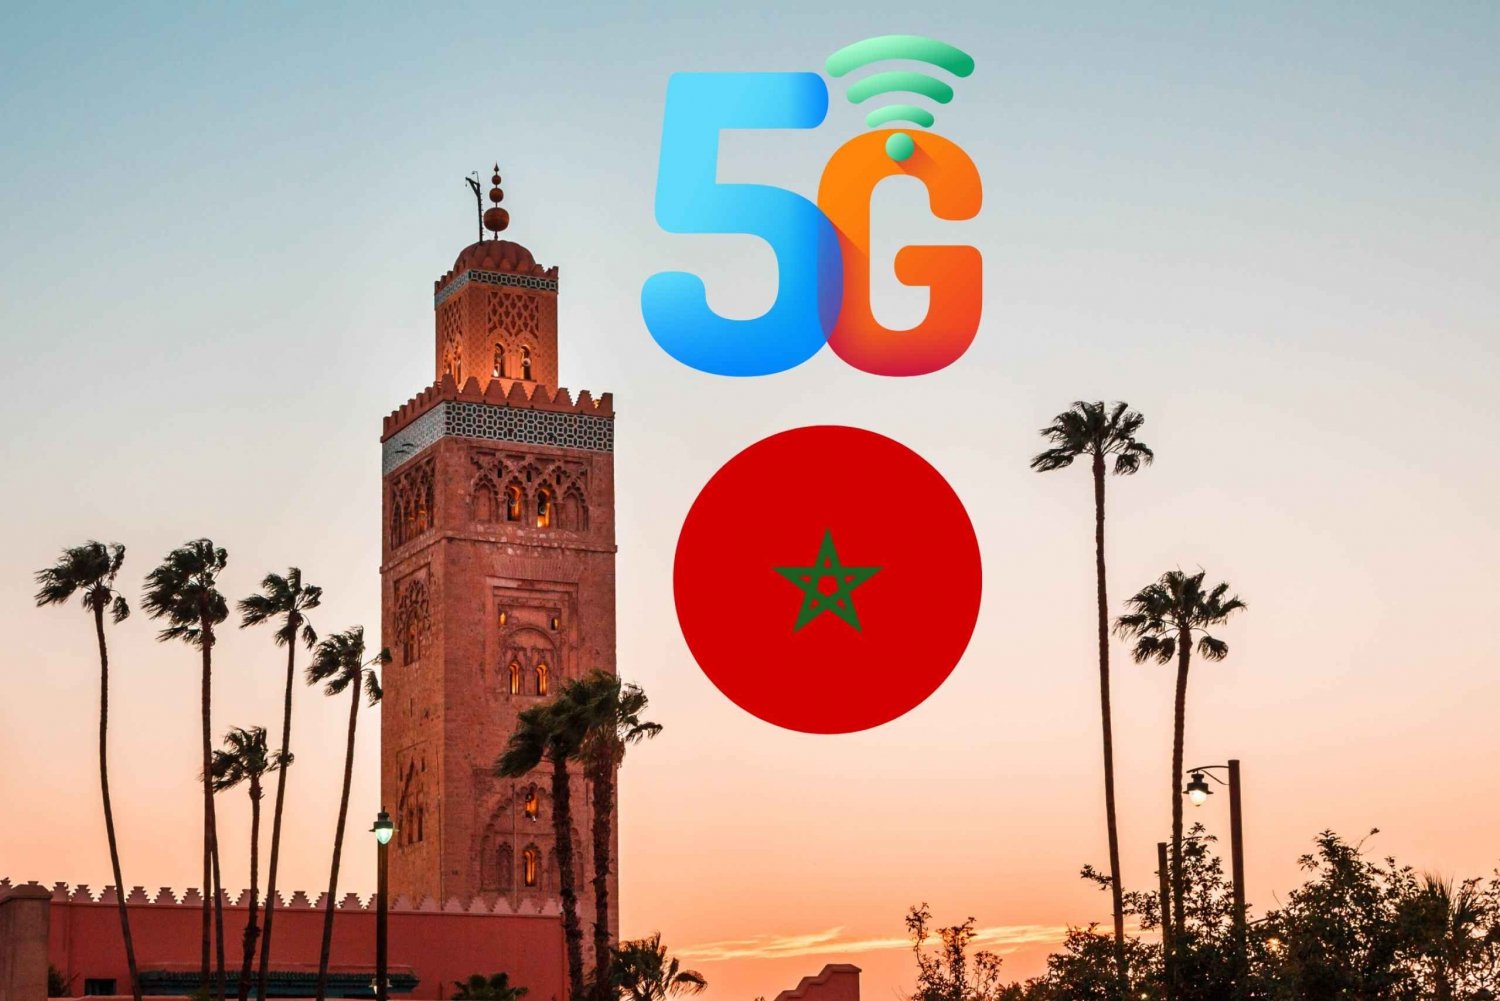 Marrocos: eSIM pré-pago com dados móveis